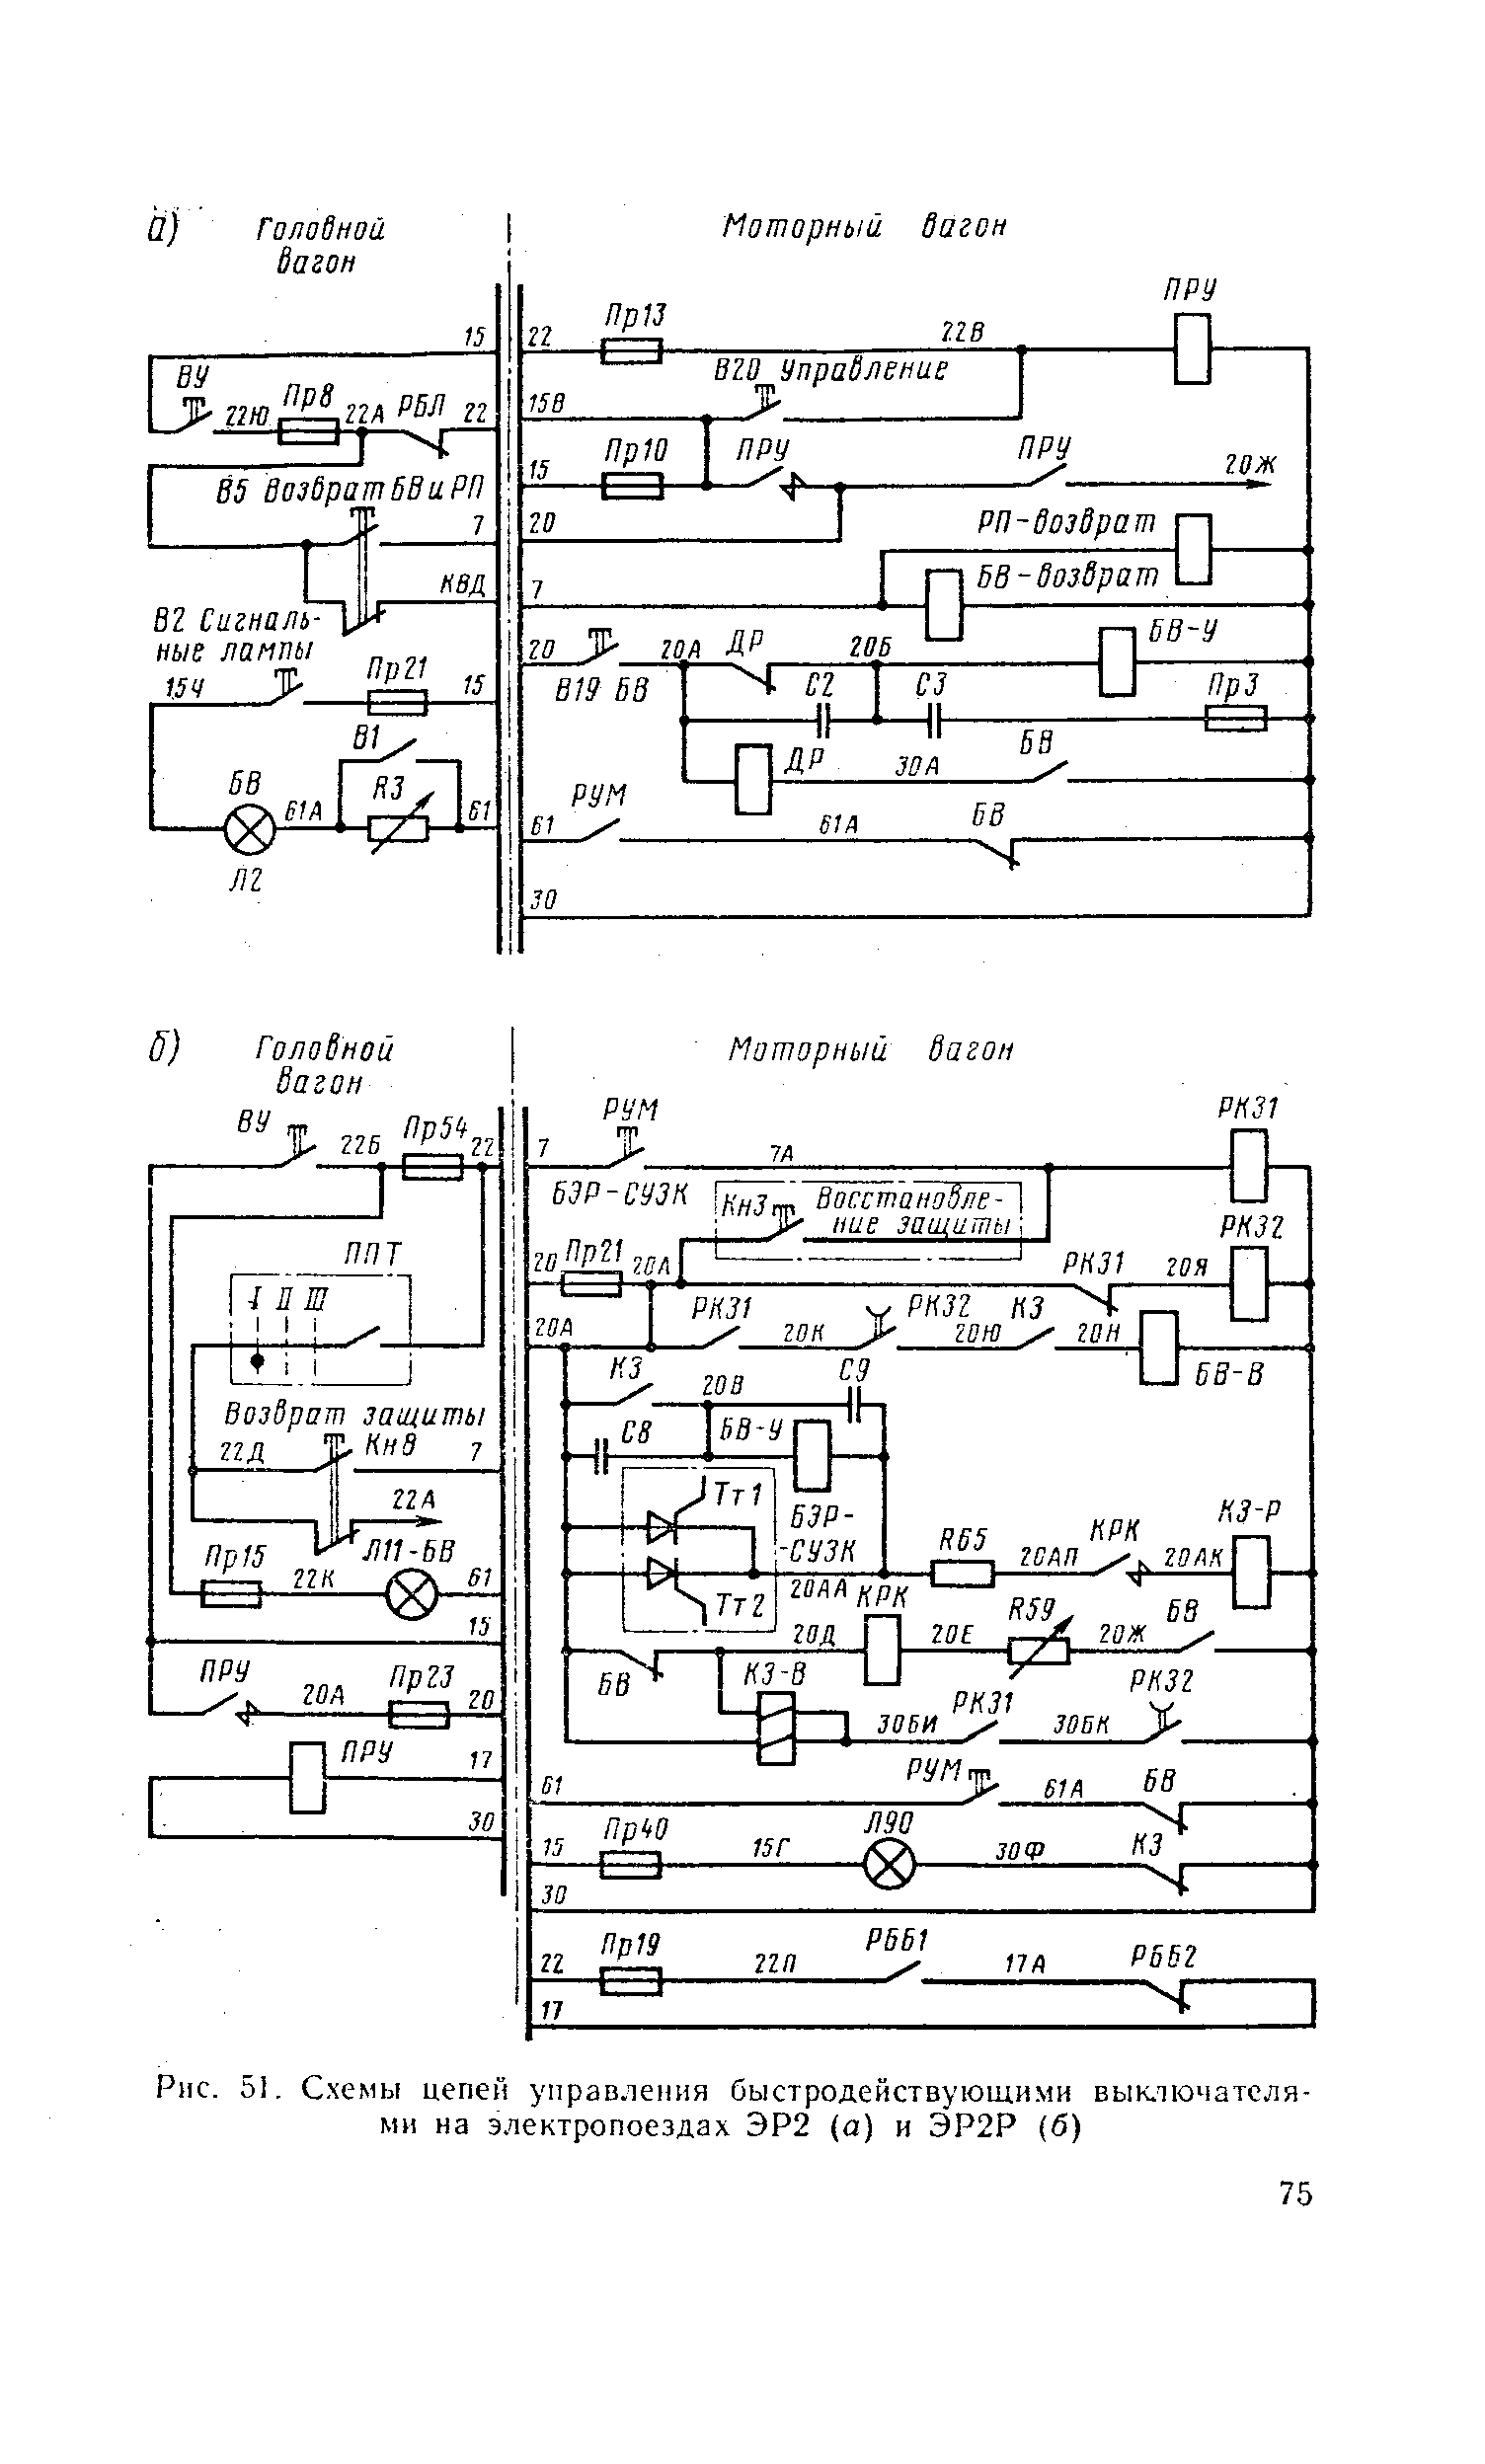 Рис. 51, С.хемы цепей управления быстродействующими выключателями на электропоездах ЭР2 (а) и ЭР2Р (б)
